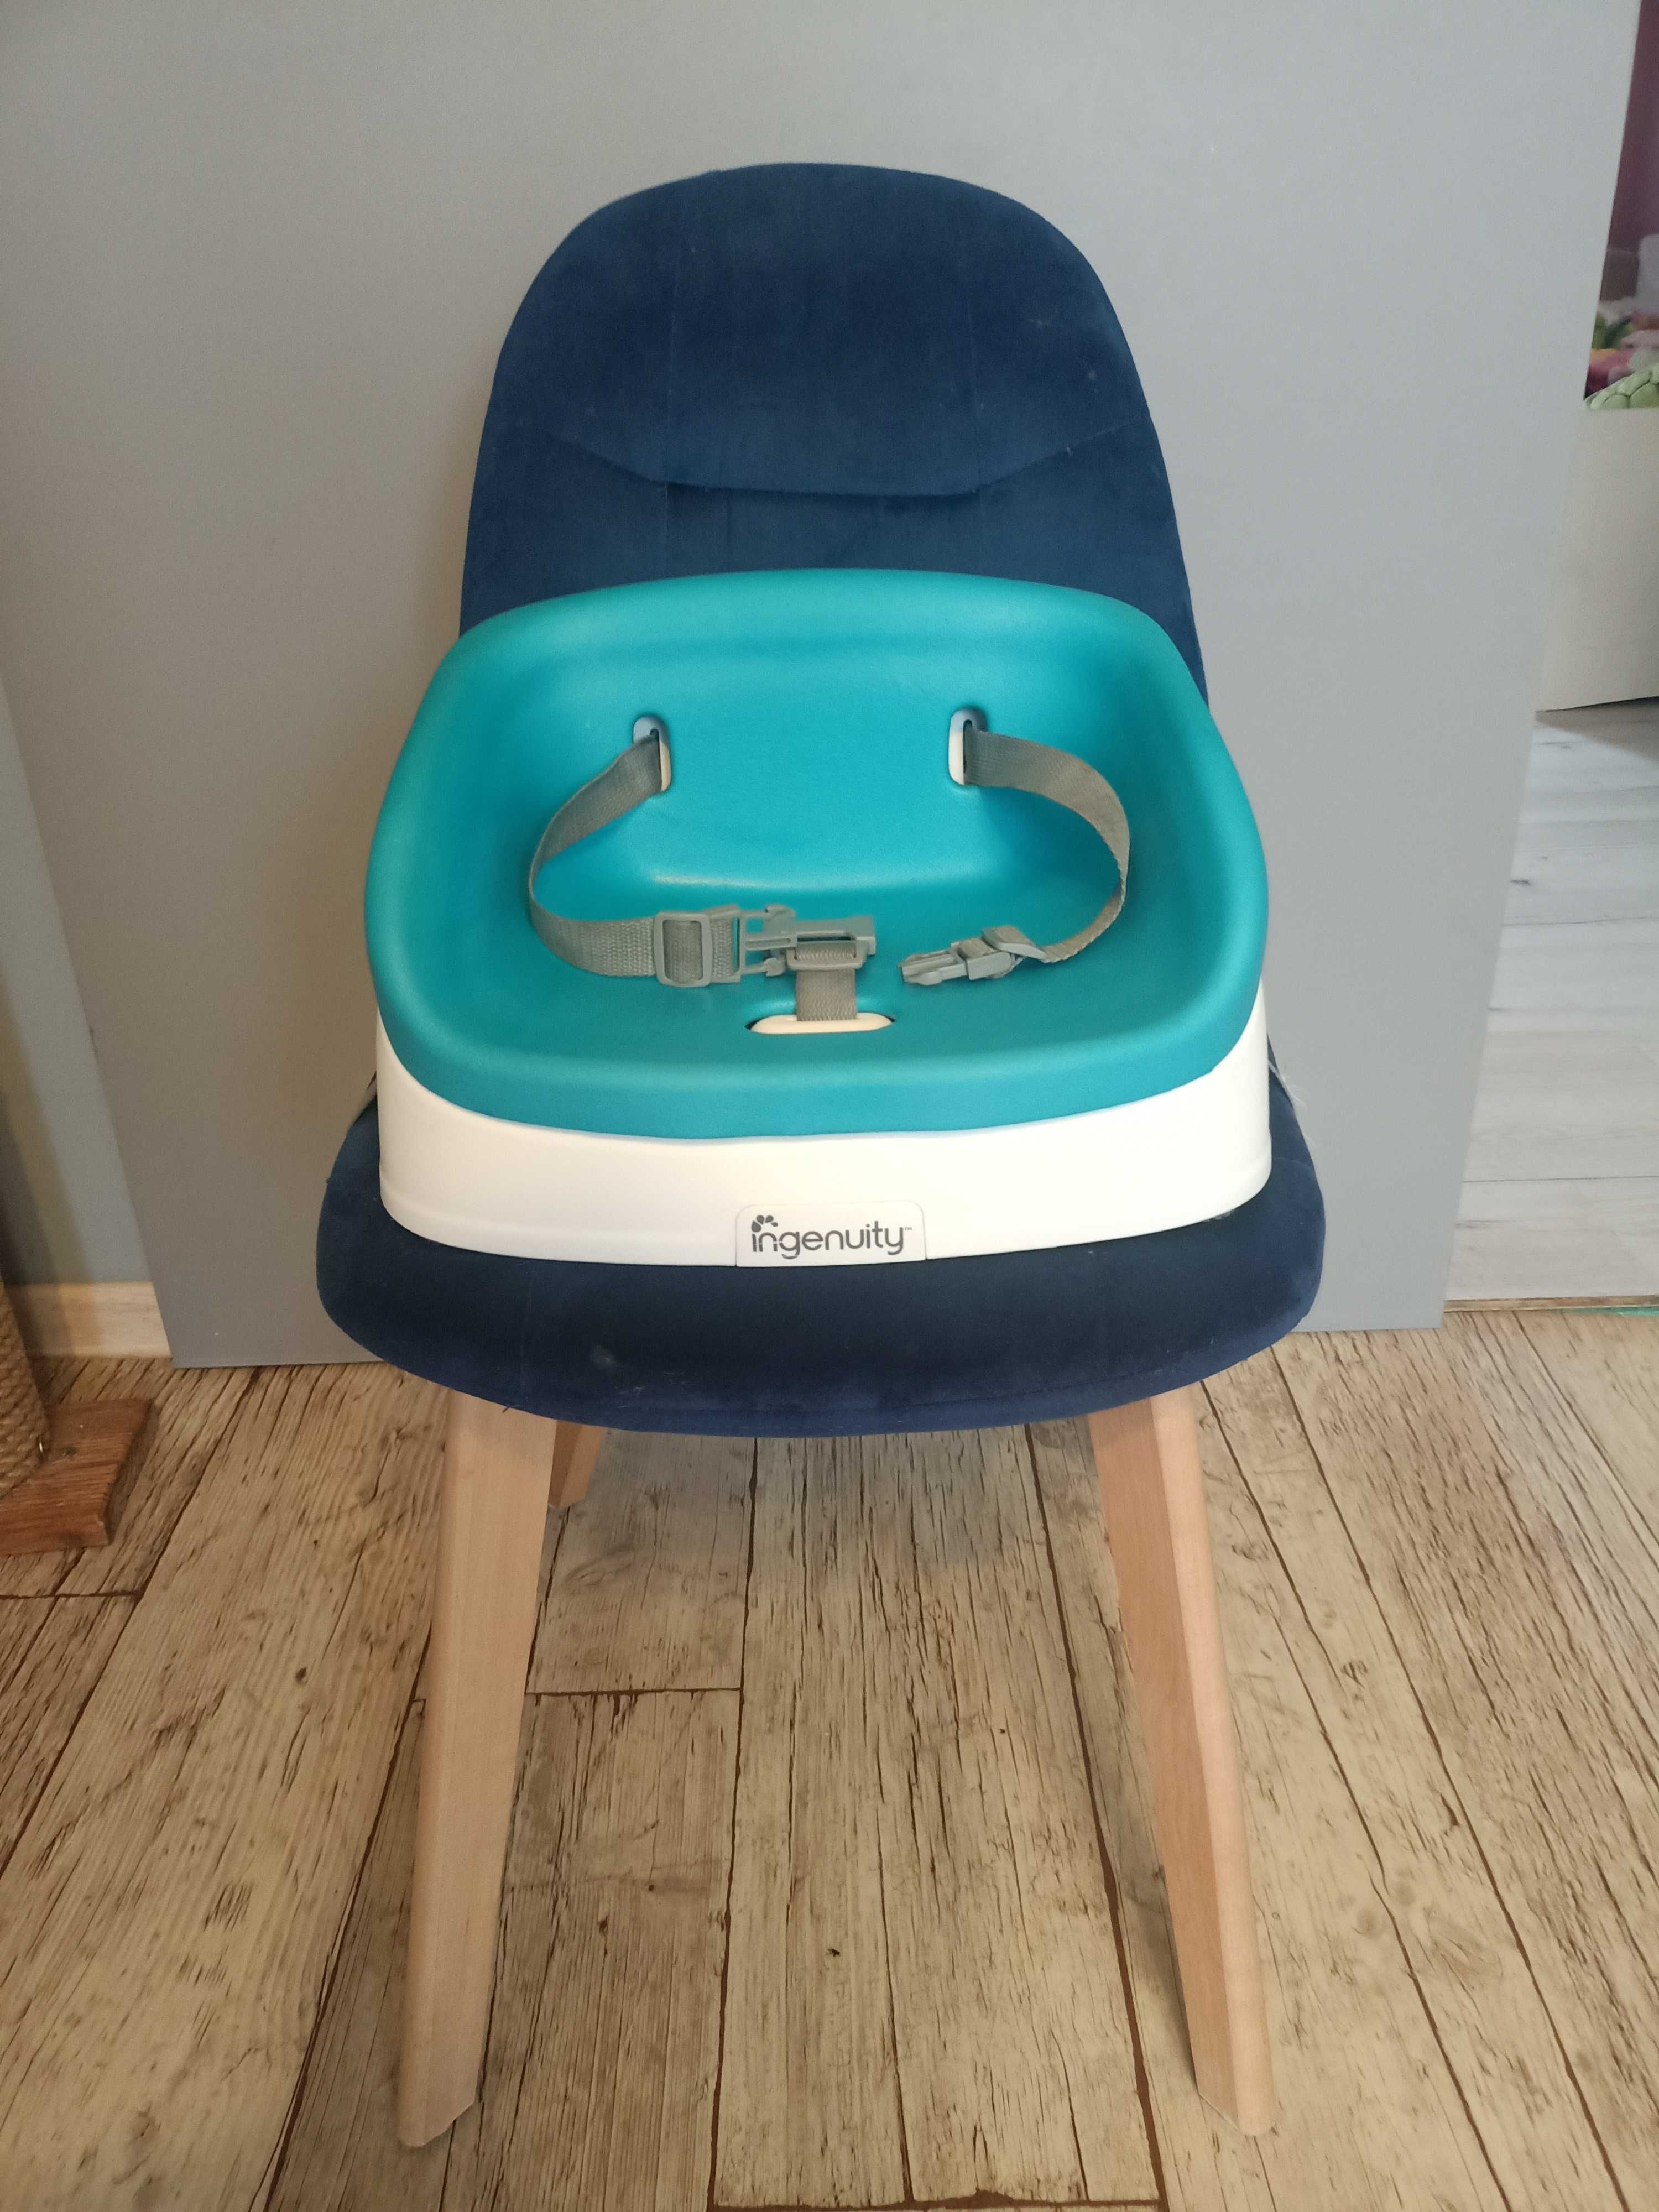 Poddupnik podwyższenie na krzesło dla dziecka fotelik INGENUITY